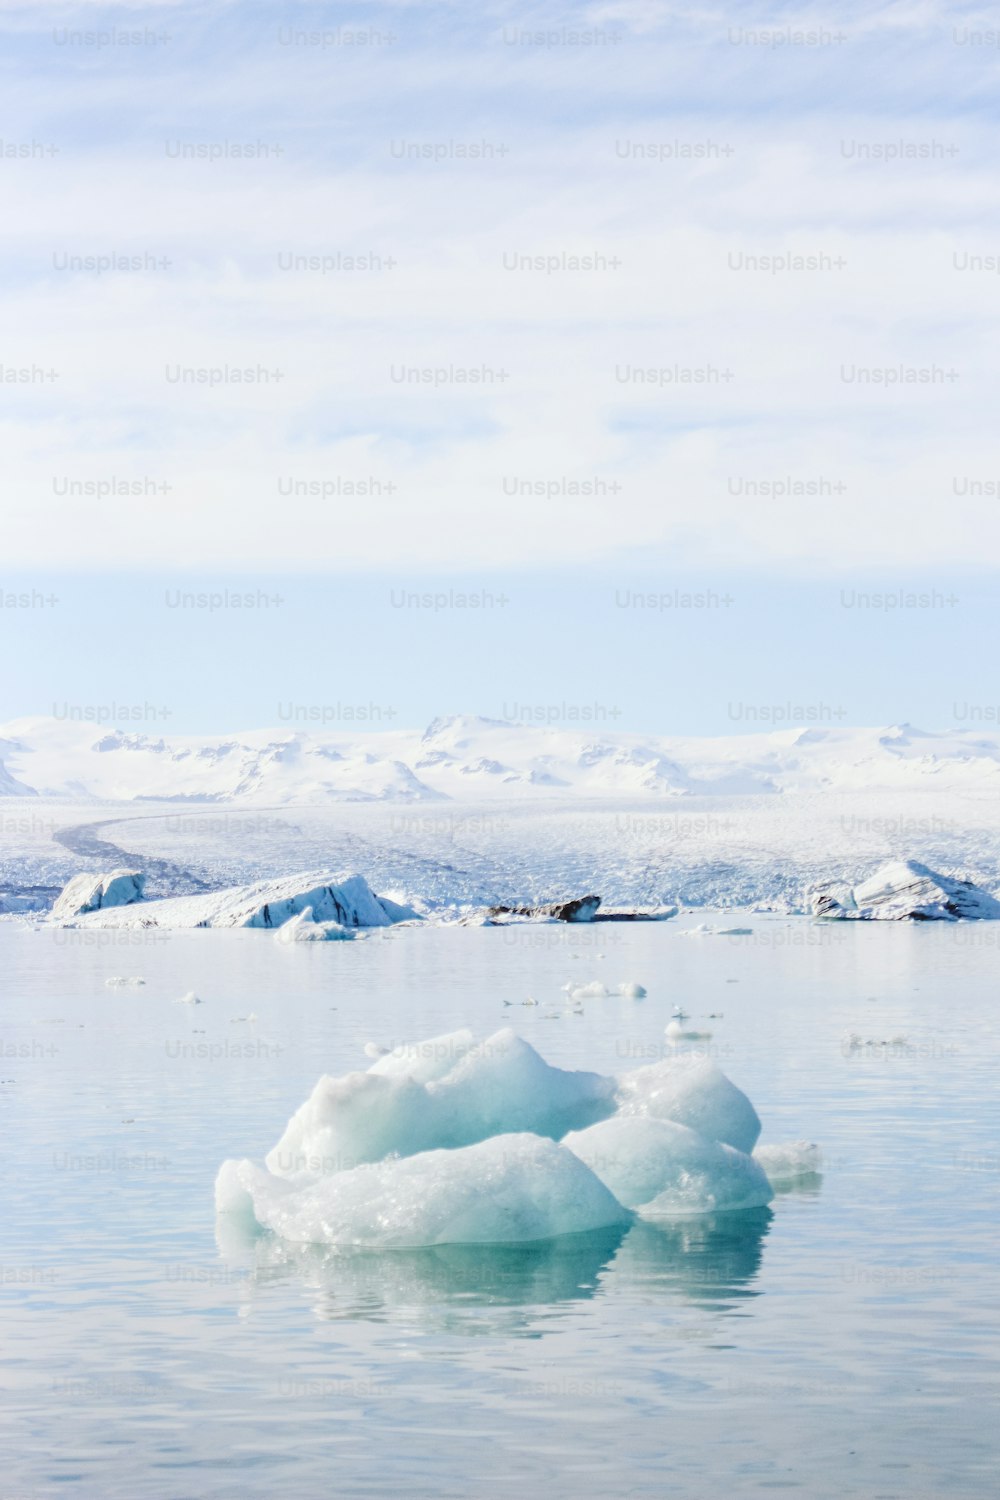 水域の上に浮かぶ大きな氷山